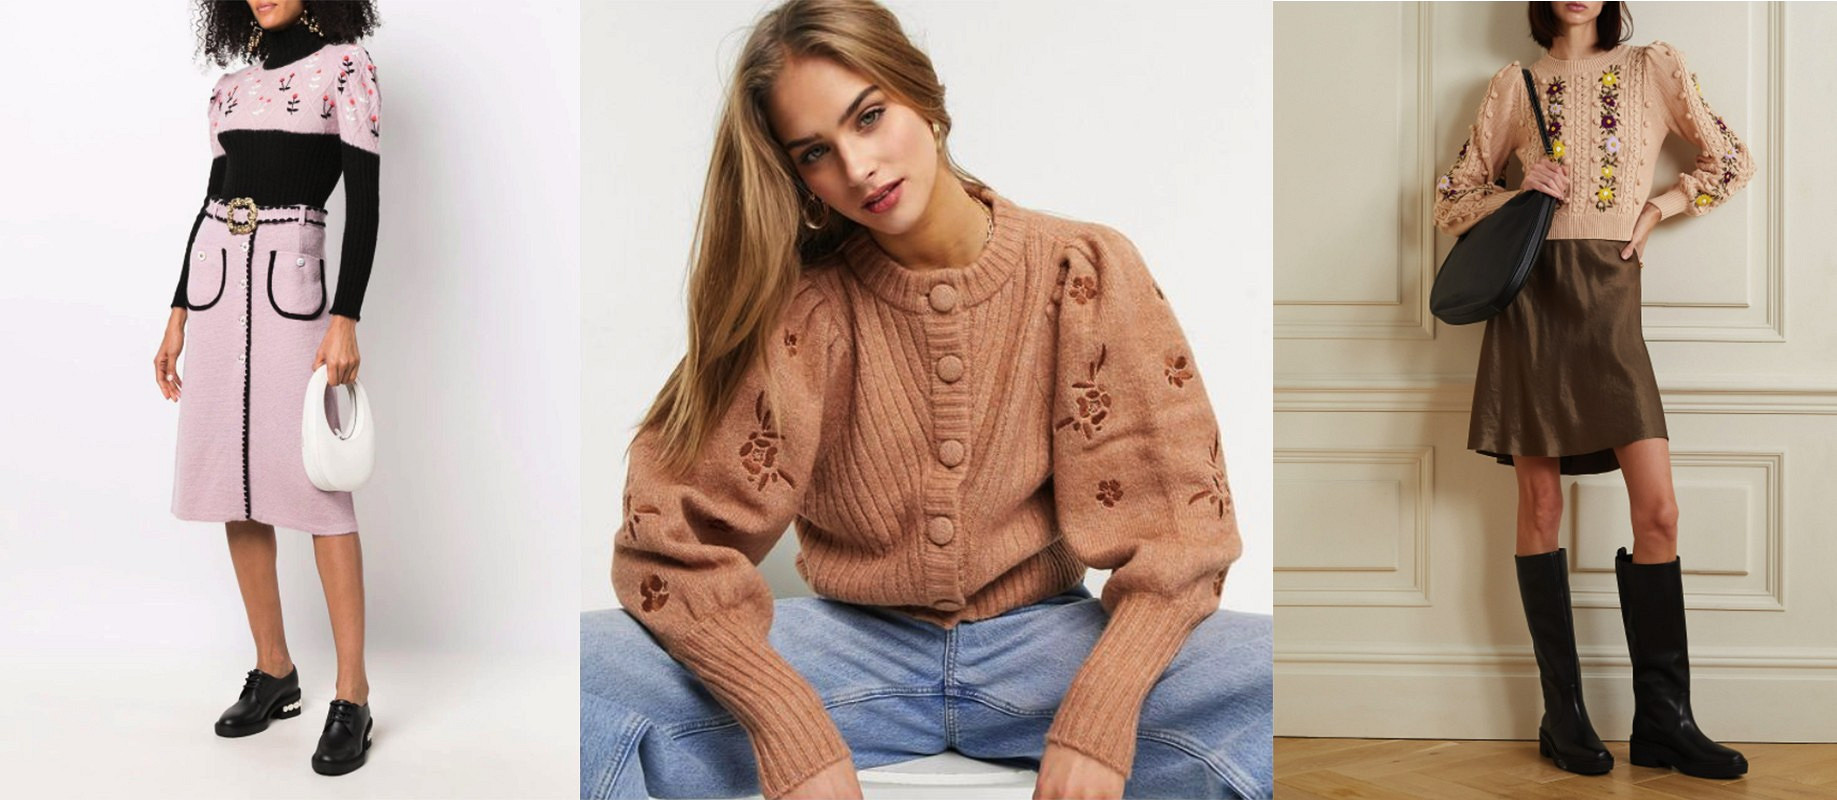 Тренд сезона: кардиганы и пуловеры с цветочной вышивкой